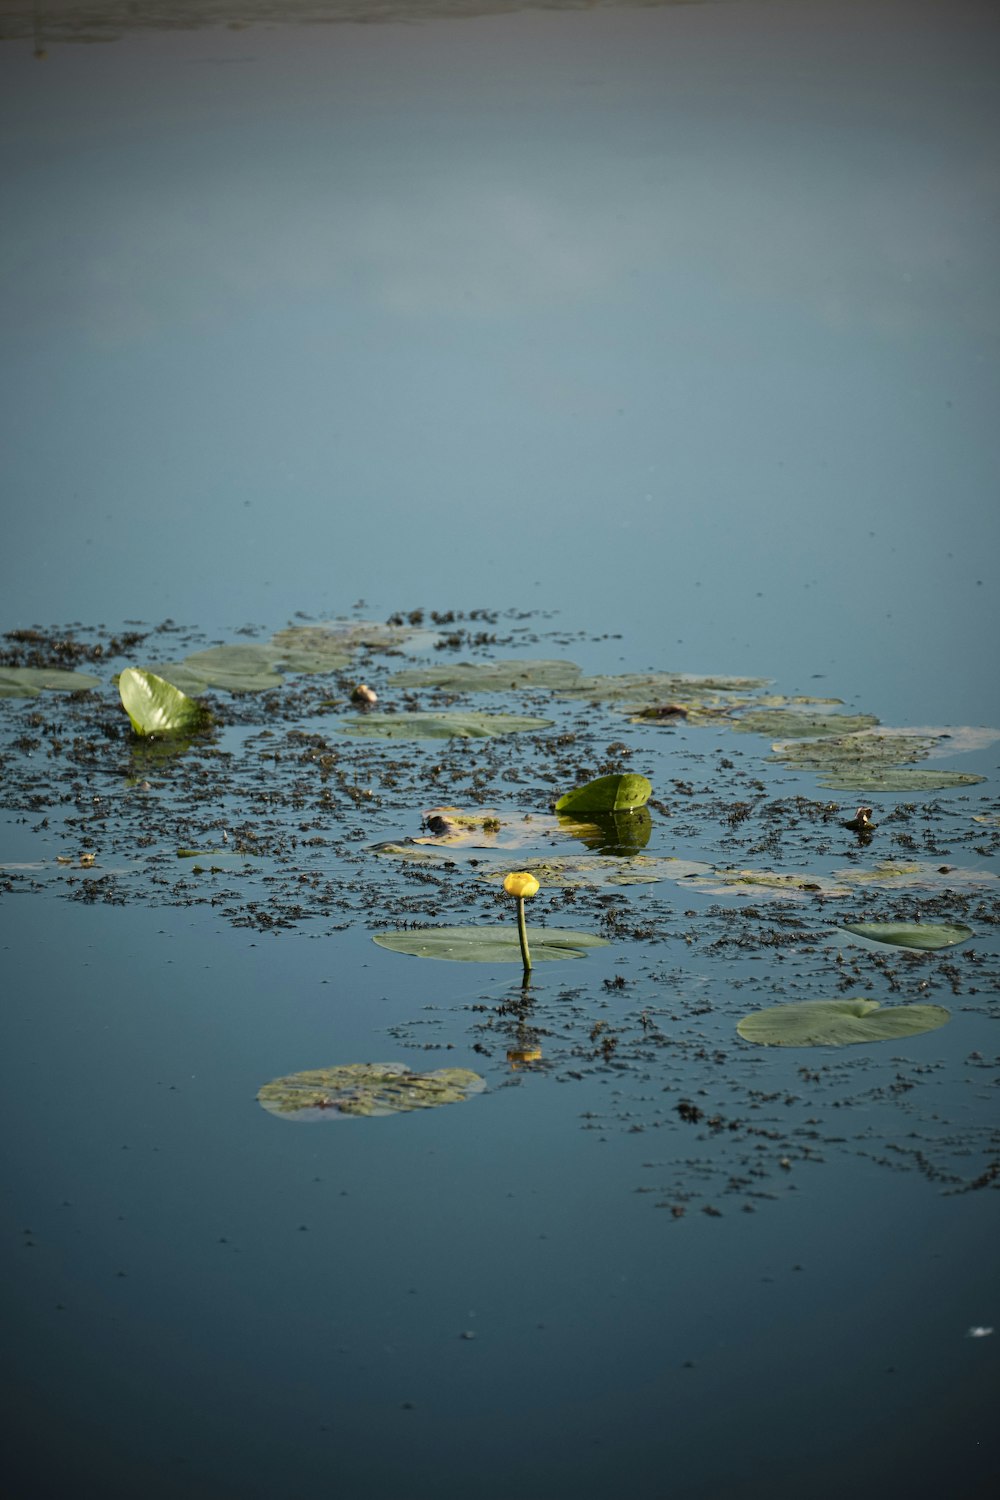 green lotus on water during daytime